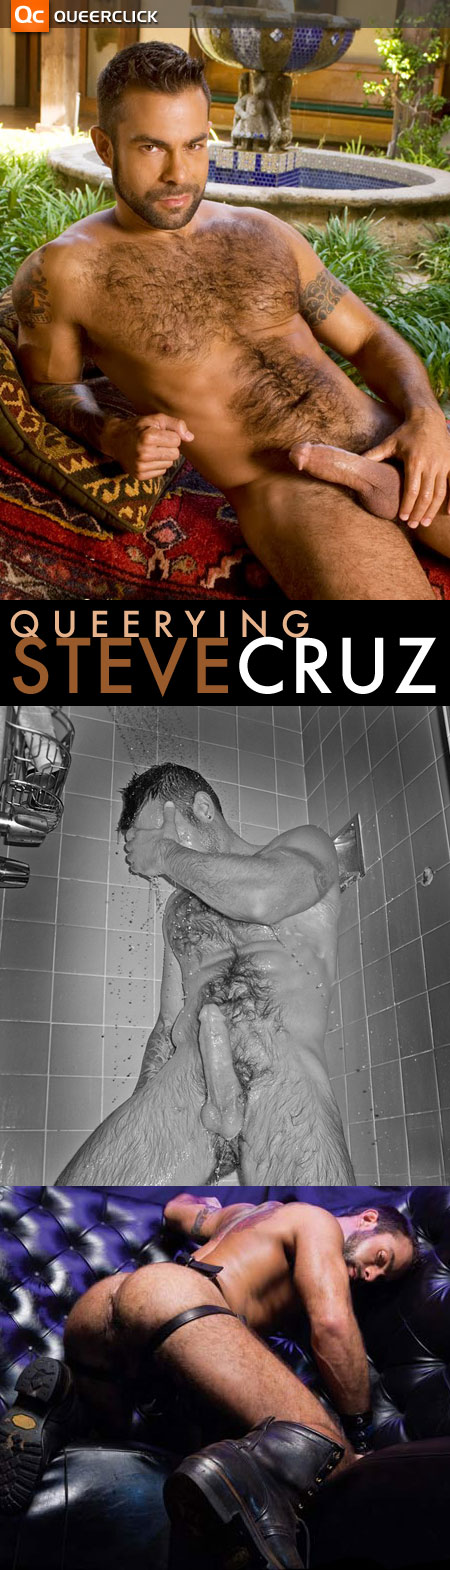 Queerying Steve Cruz